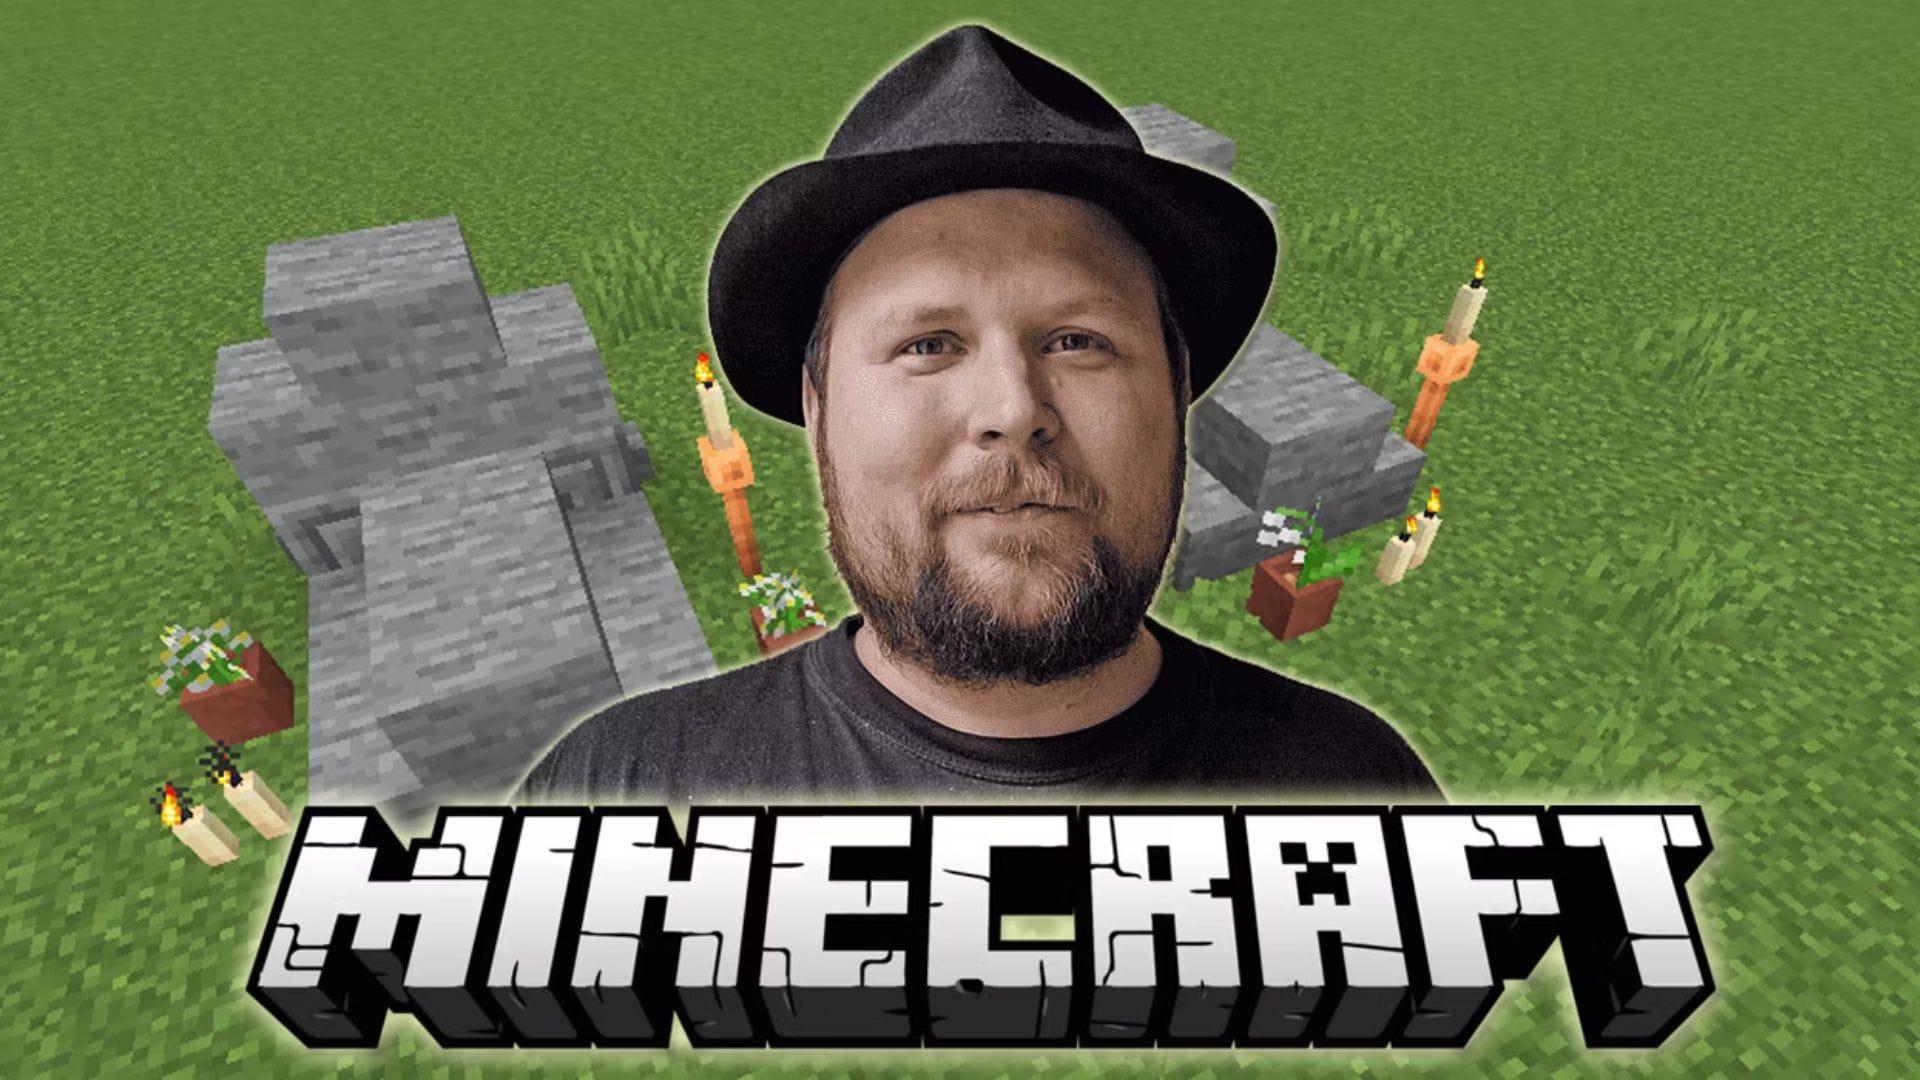 Notch บิดาแห่ง Minecraft’ จากความรักที่มีต่อการพัฒนาเกม สู่การละทิ้งผลงานชิ้นเอกของตัวเอง เพราะไม่เหลือความสนุกในการสร้างอีกต่อไป